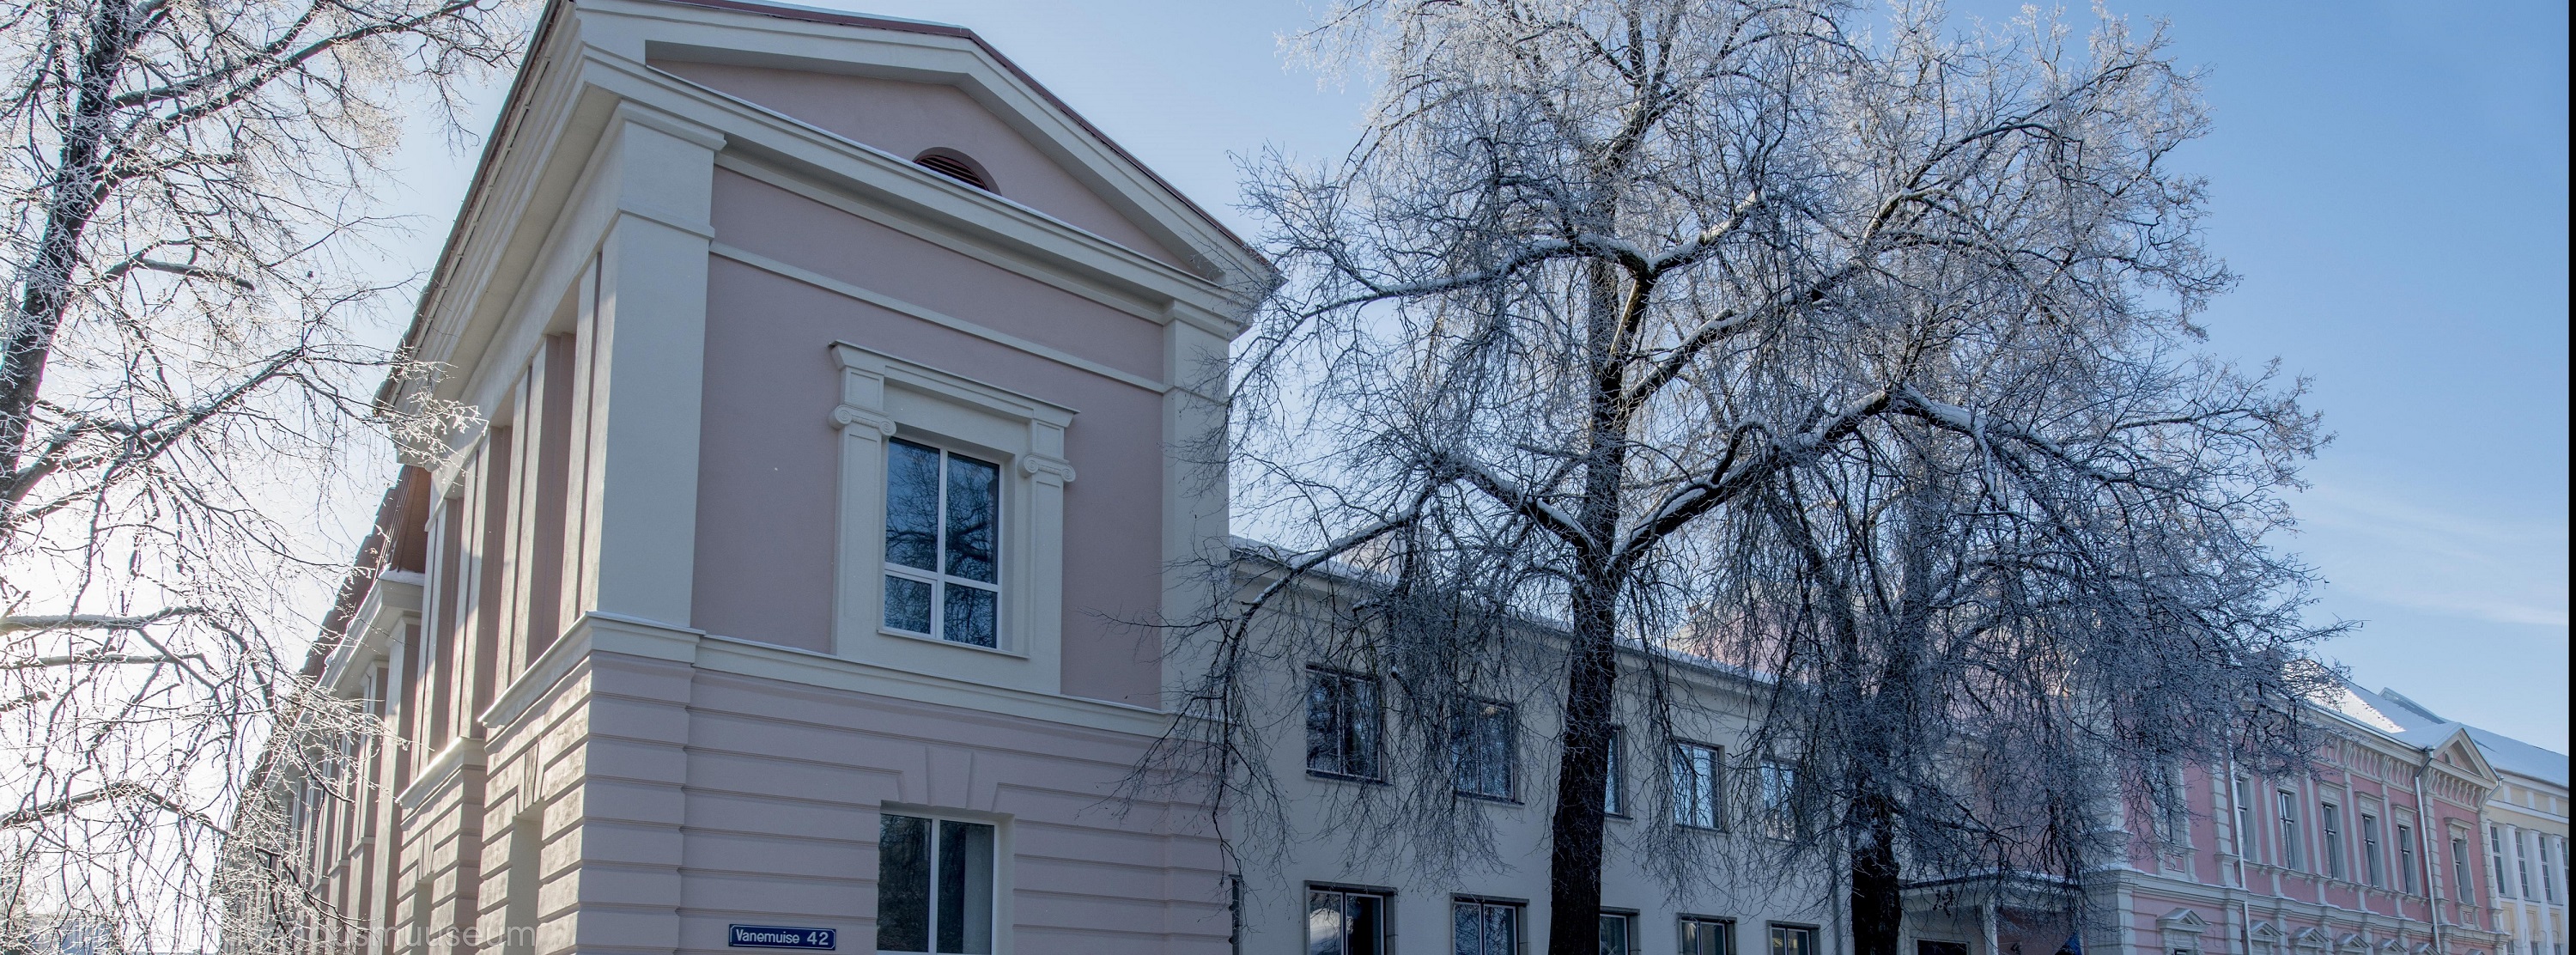 Helge talvine foto Eesti Kirjandusmuuseumi hoone sellest tiivast, kus töötavad paljud folkloristika osakonna töötajad. Näha on kaks valges härmatises puud ja ülal on päikeseline selge helesinine taevas.